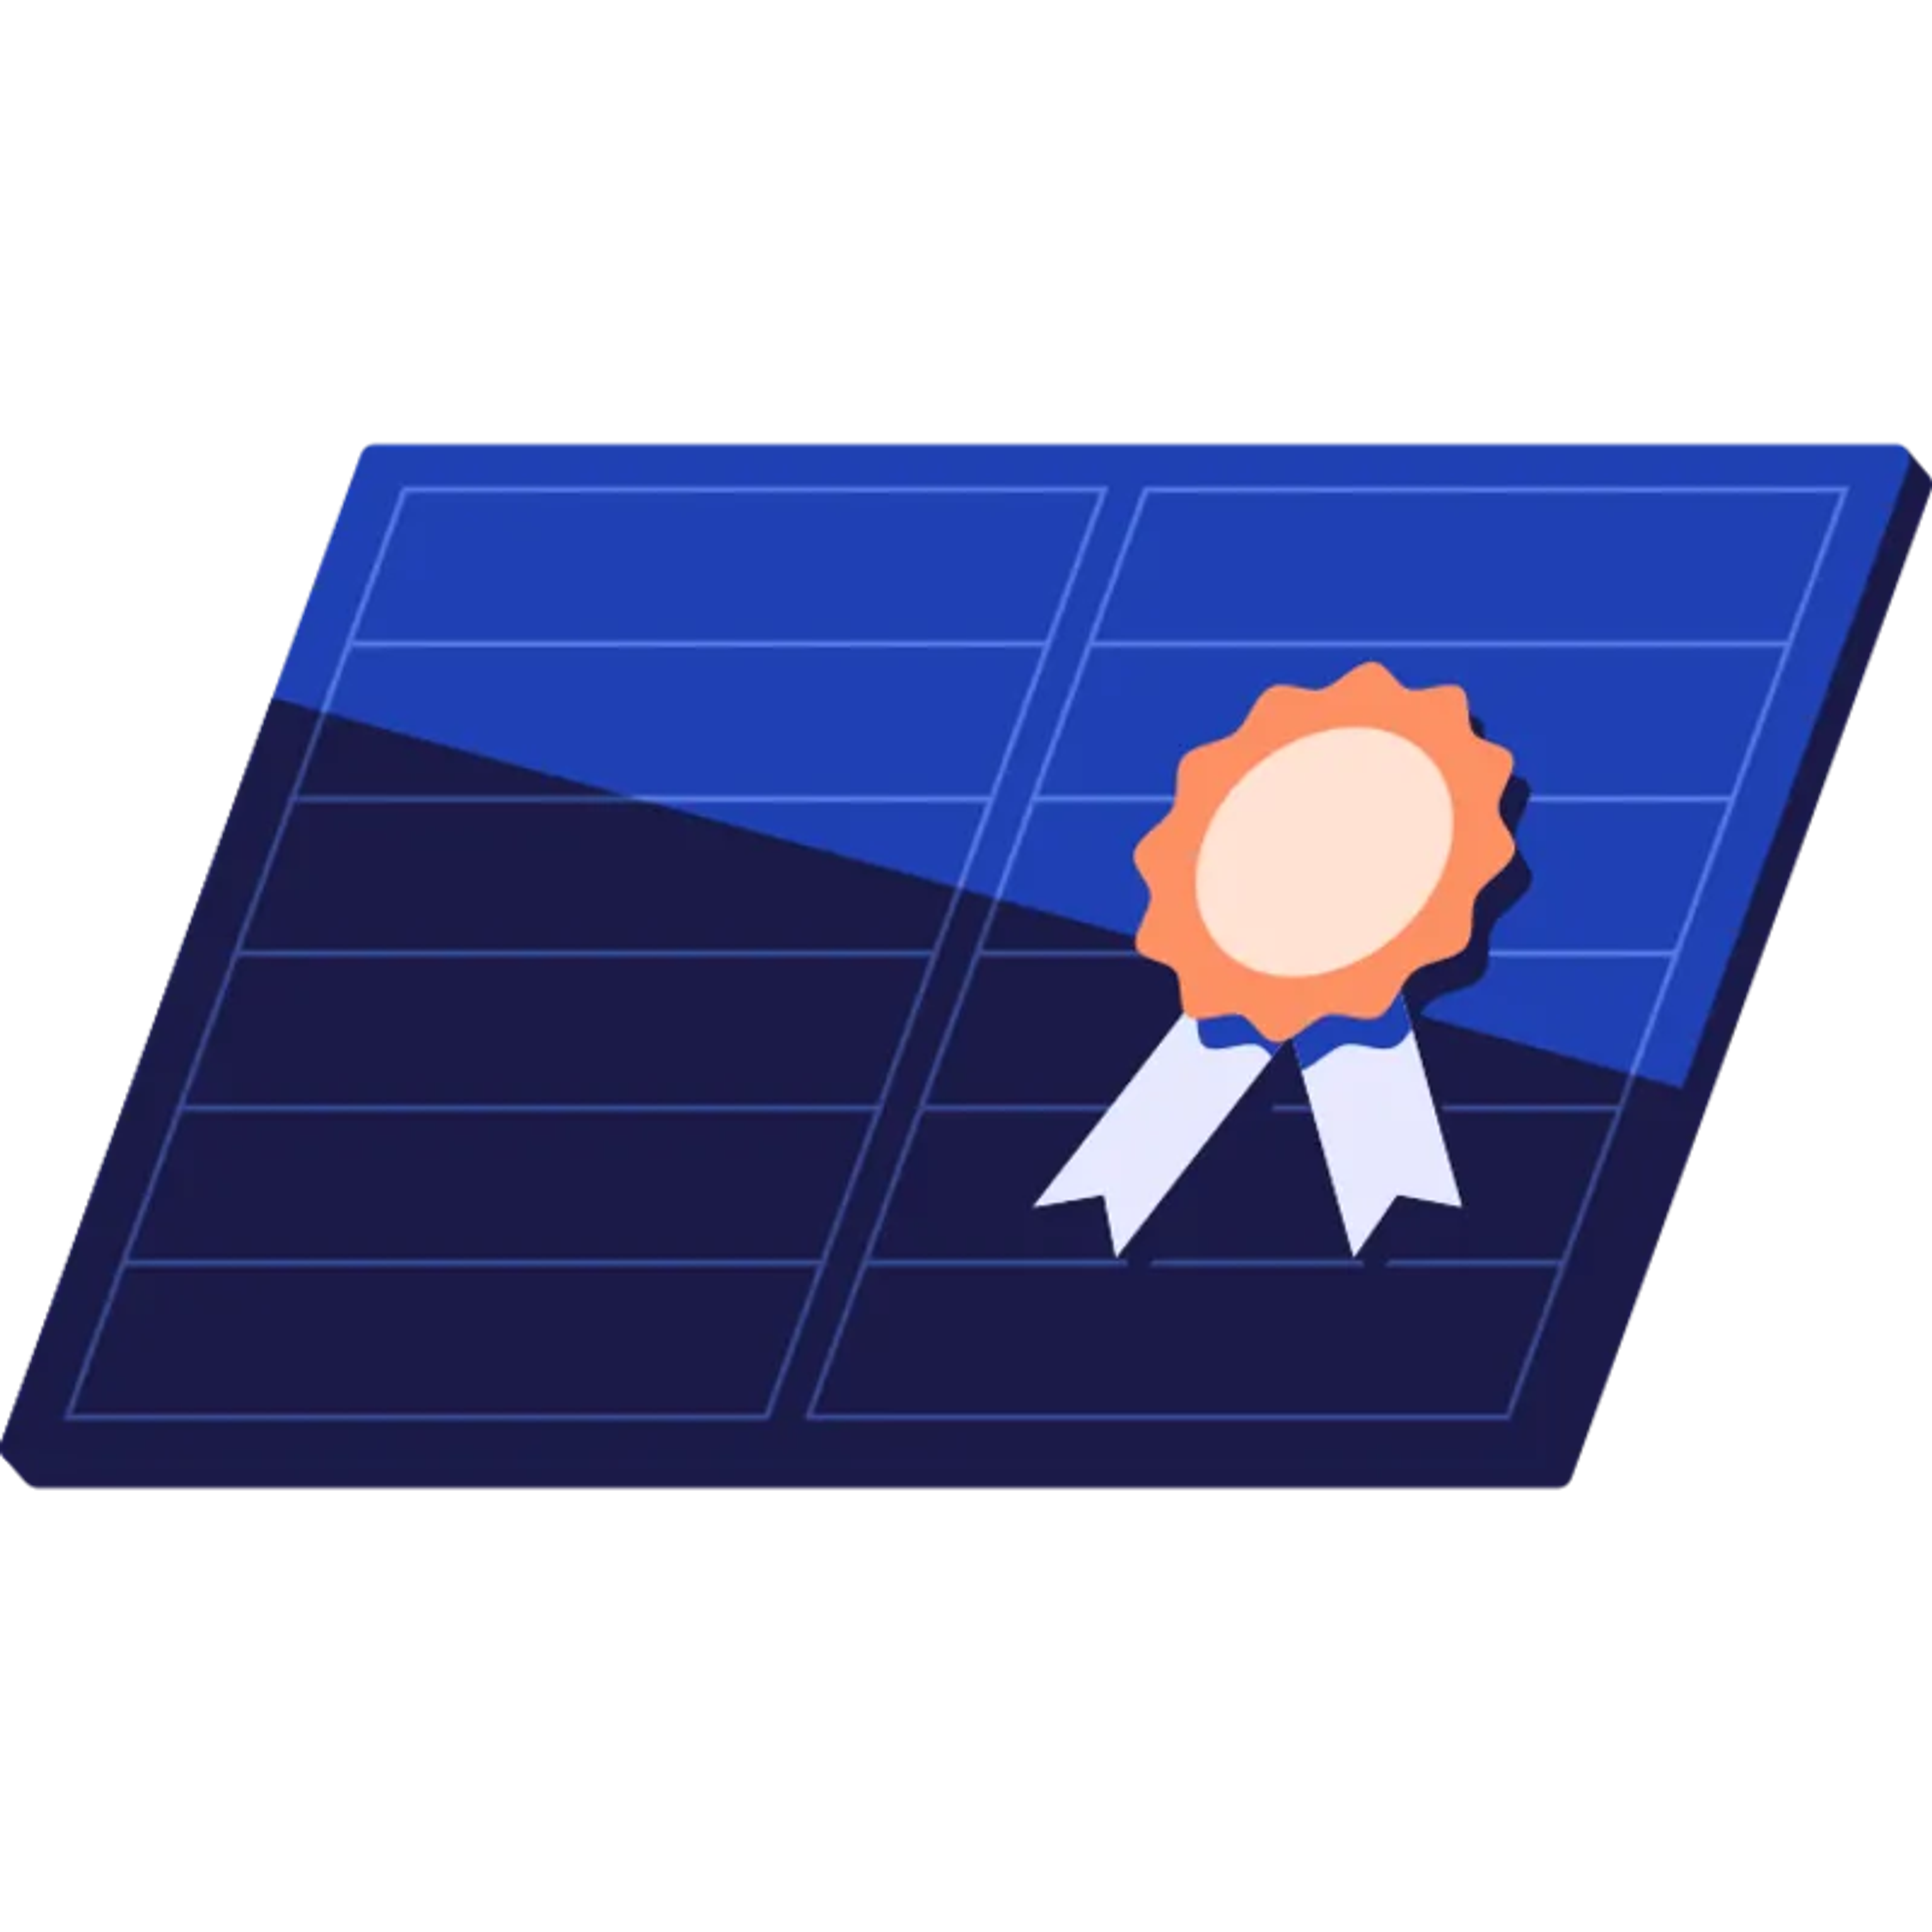 Illustratie van een zonnepaneel met een lintje